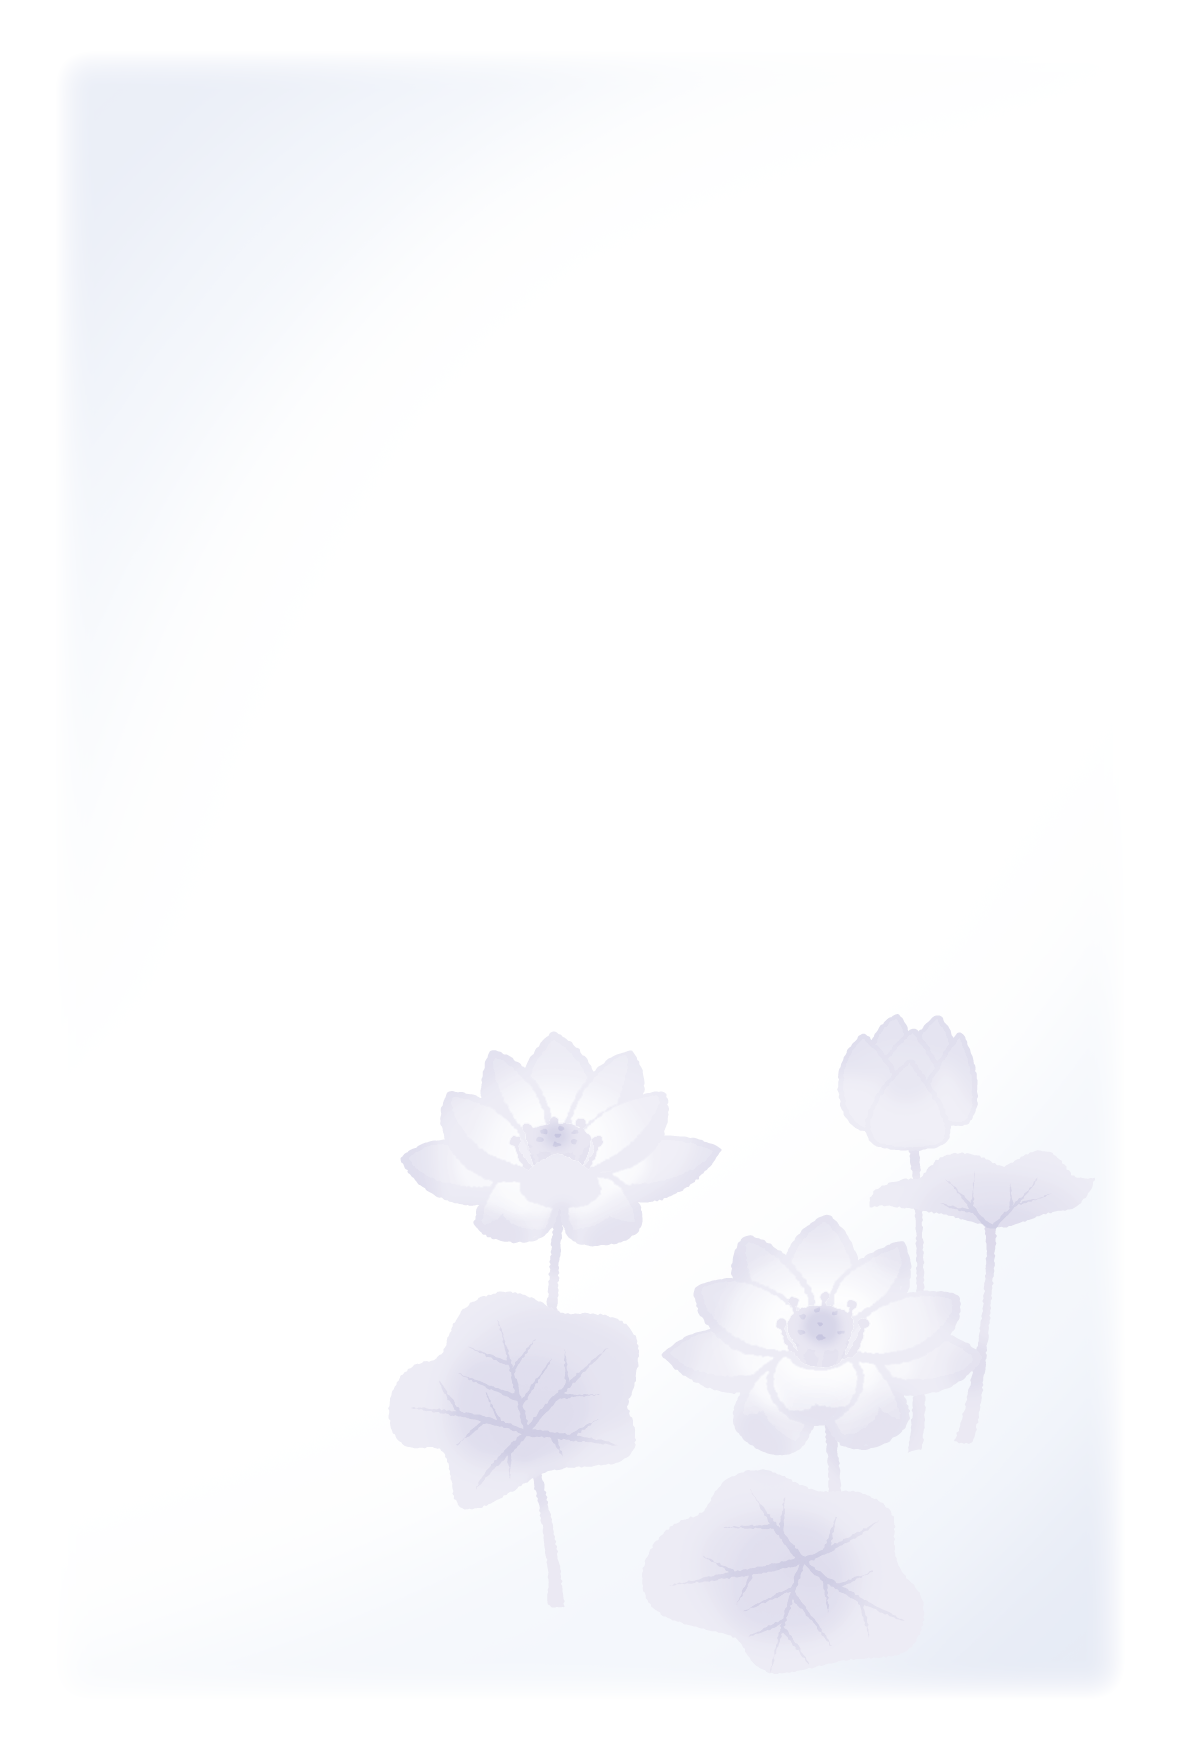 喪中はがきの背景 / 蓮の花のかわいいフリーイラスト素材